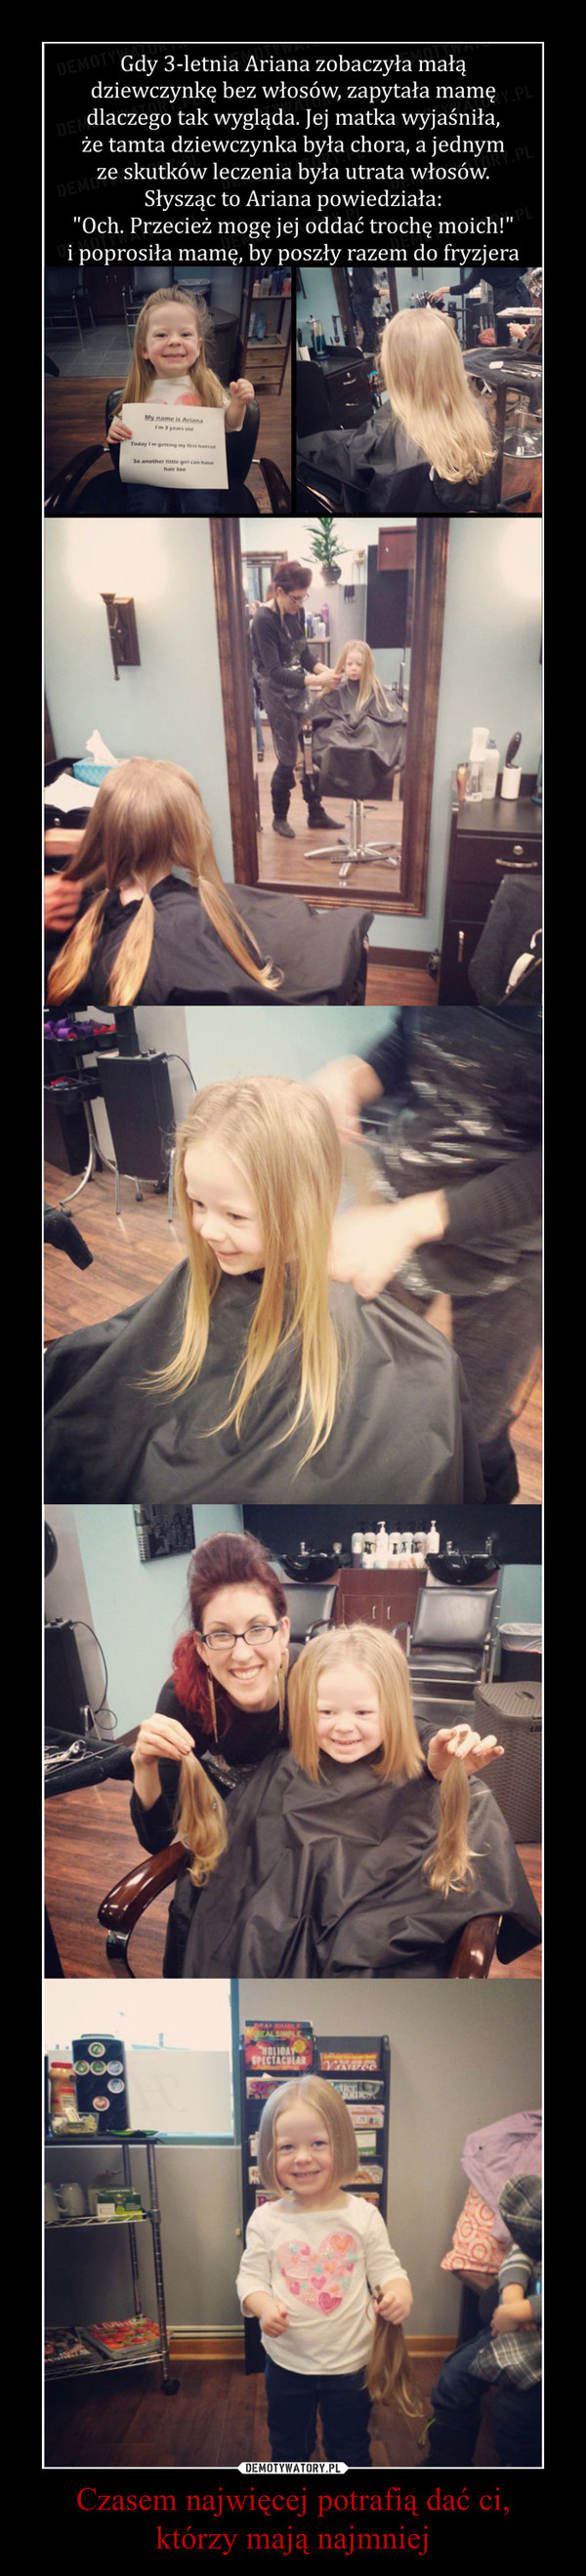 Czasem najwięcej potrafią dać ci,którzy mają najmniej –  3-letnia Ariana ścięła włosy, żeby podarować je chorej dziewczynce